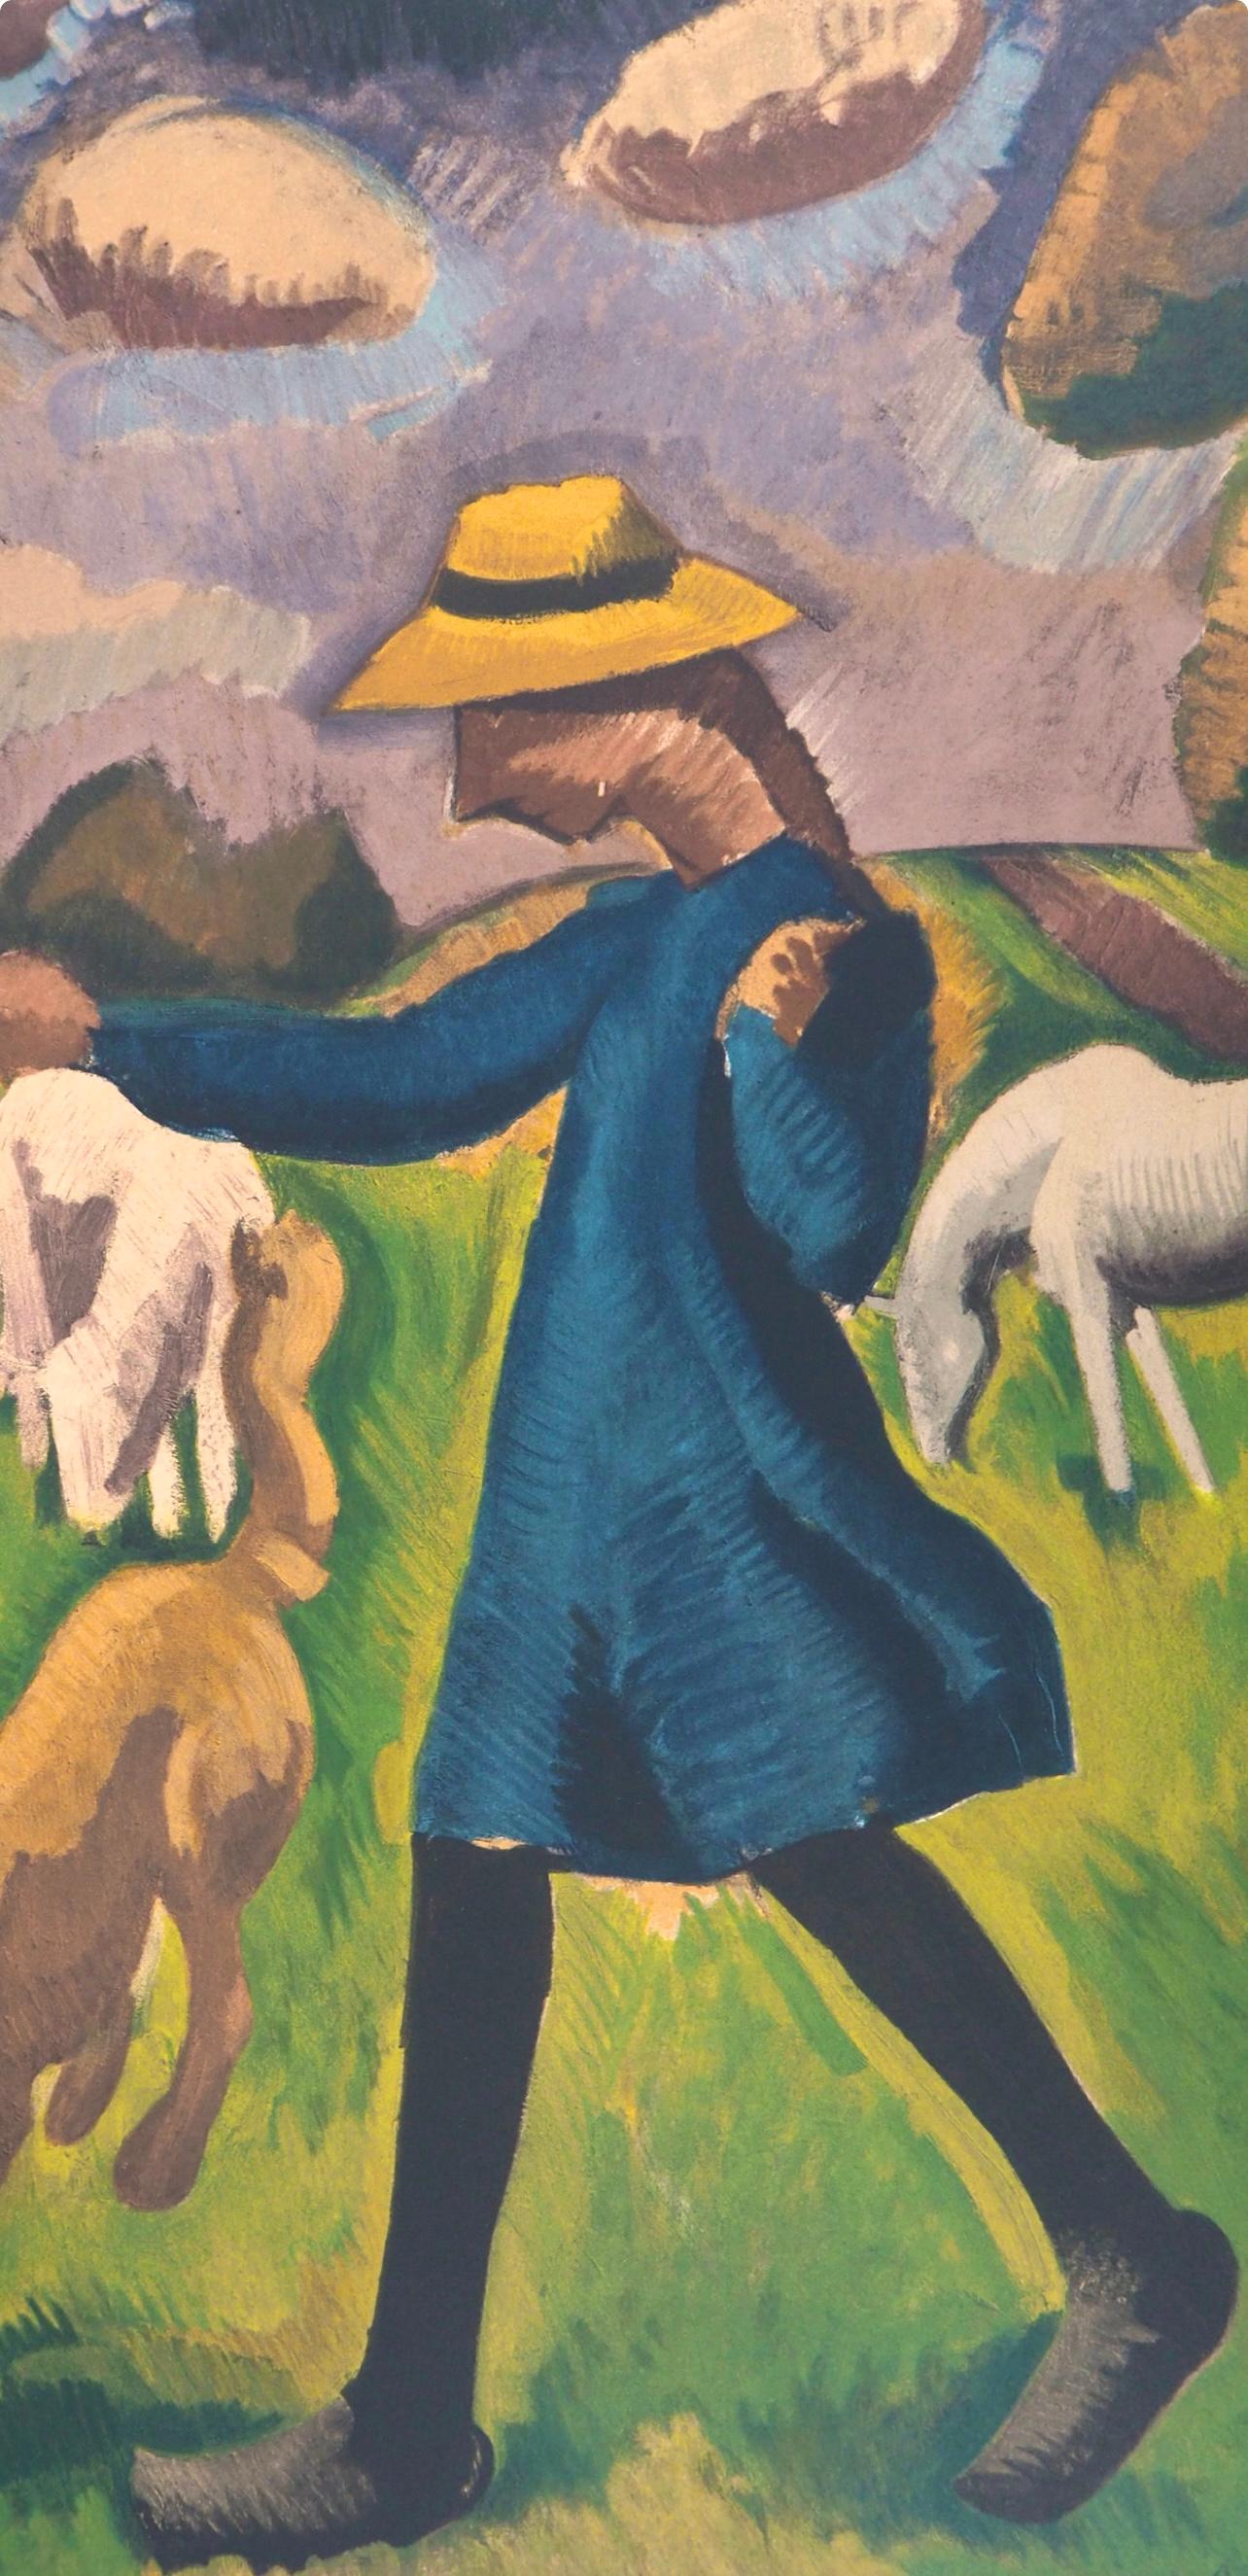 de La Fresnaye, Gardeuse de moutons, Roger de La Fresnaye (after) - Print by Roger de la Fresnaye